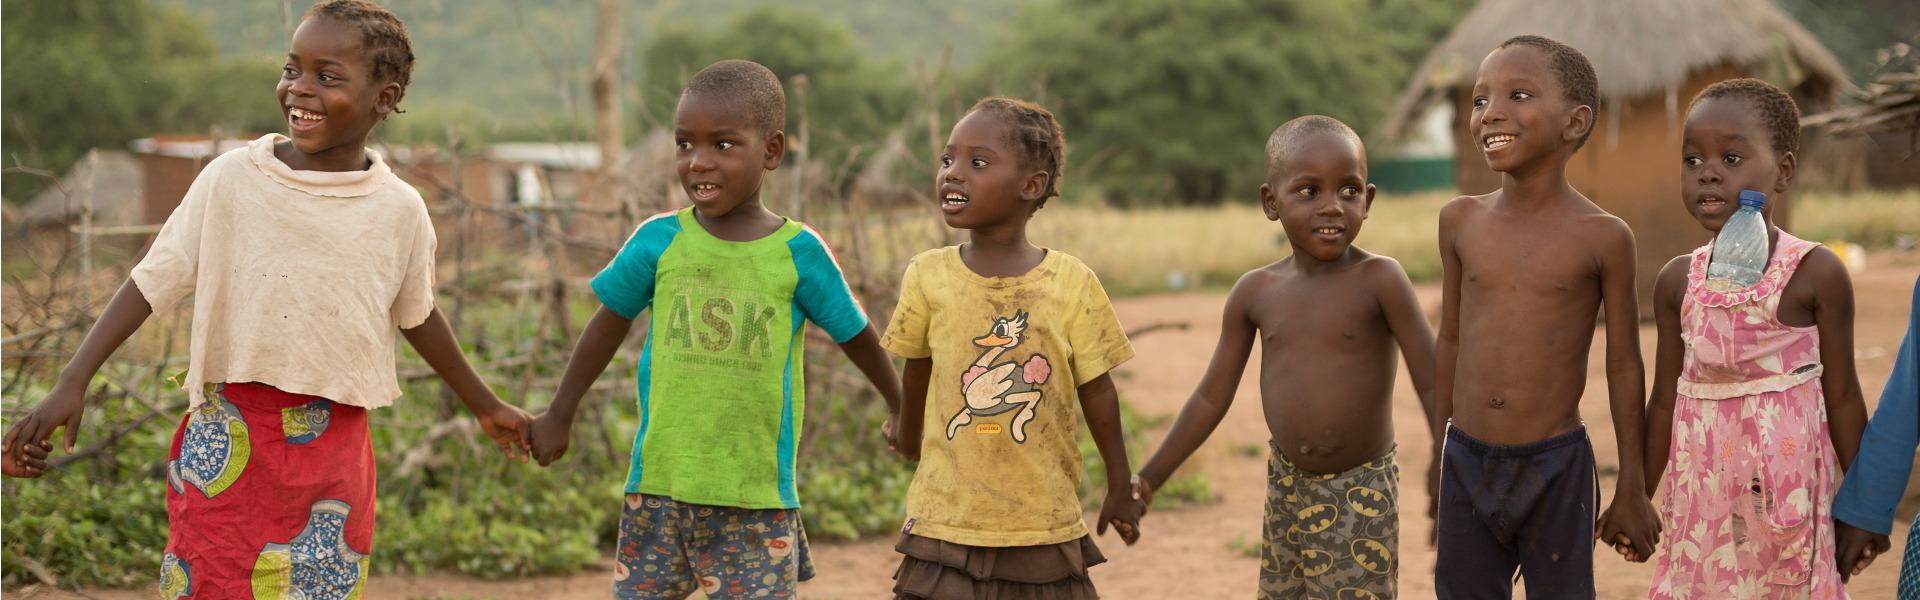 Kinder aus Afrika halten sich an den Händen